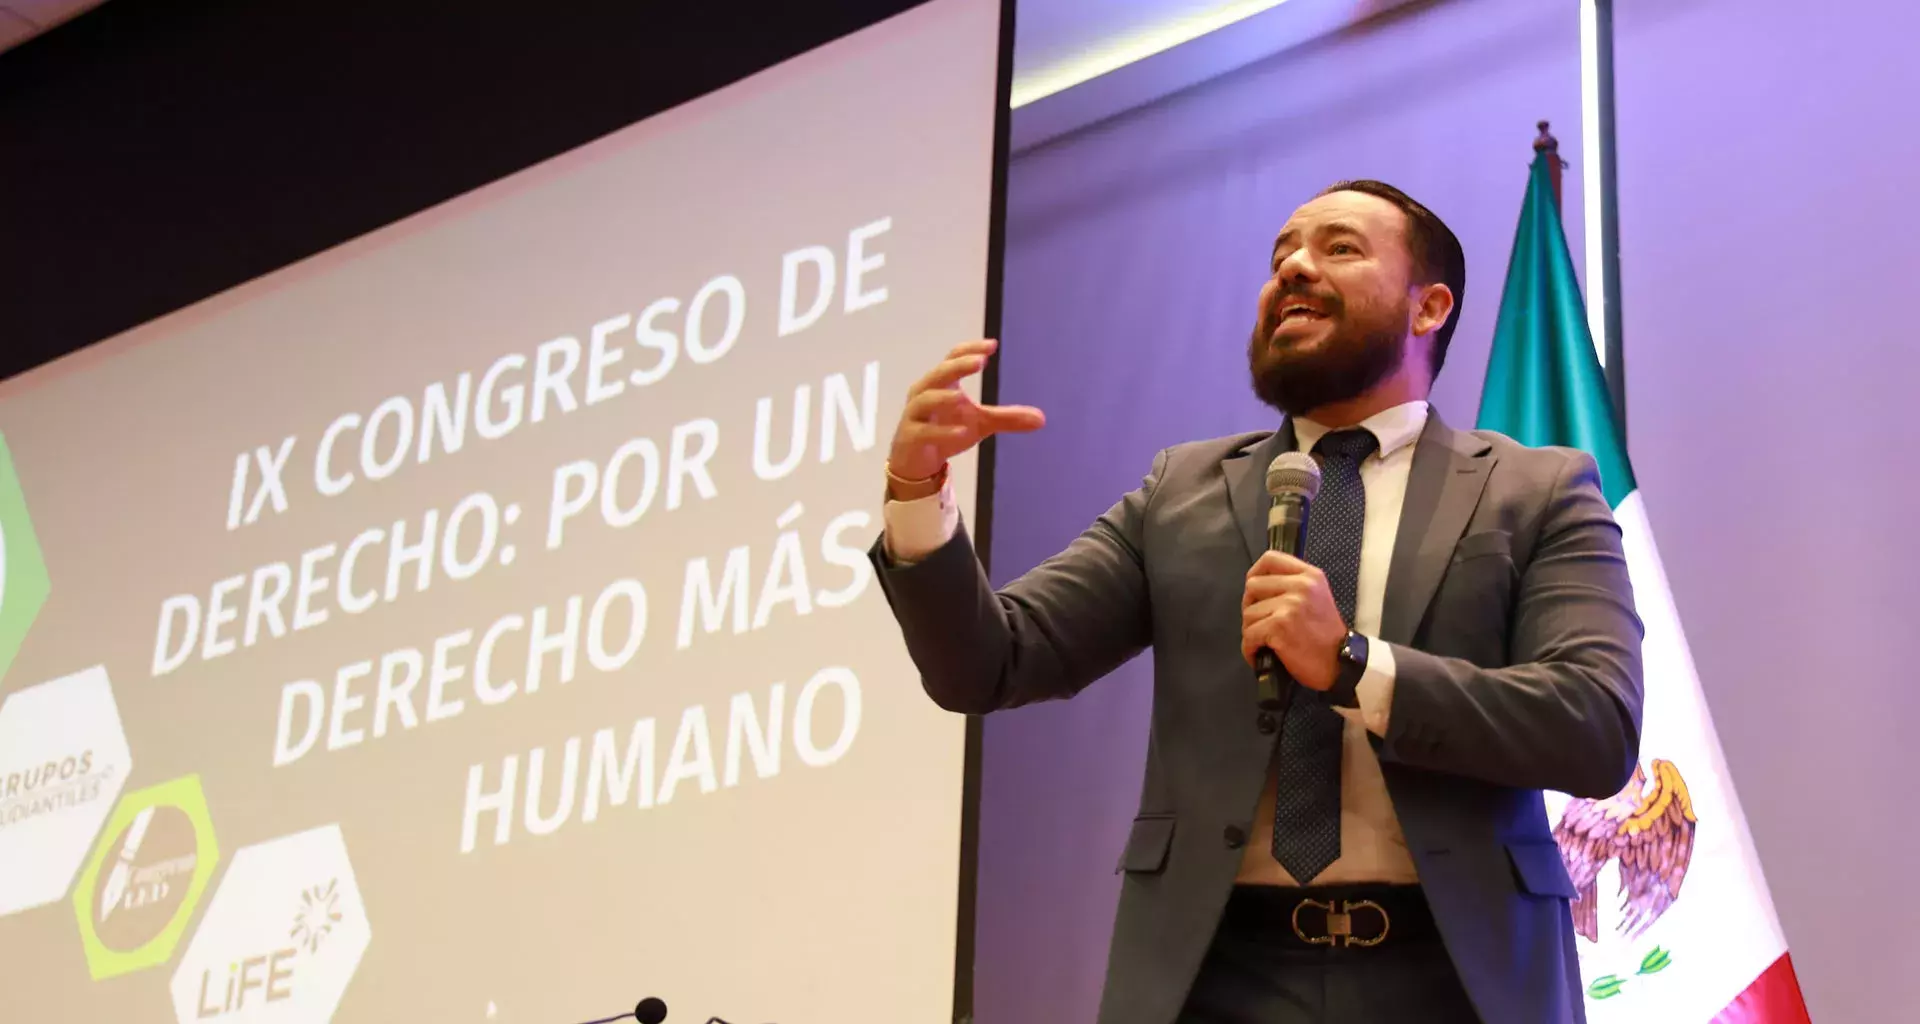 Congreso de derecho en Tec Guadalajara abordó el tema de derechos humanos.